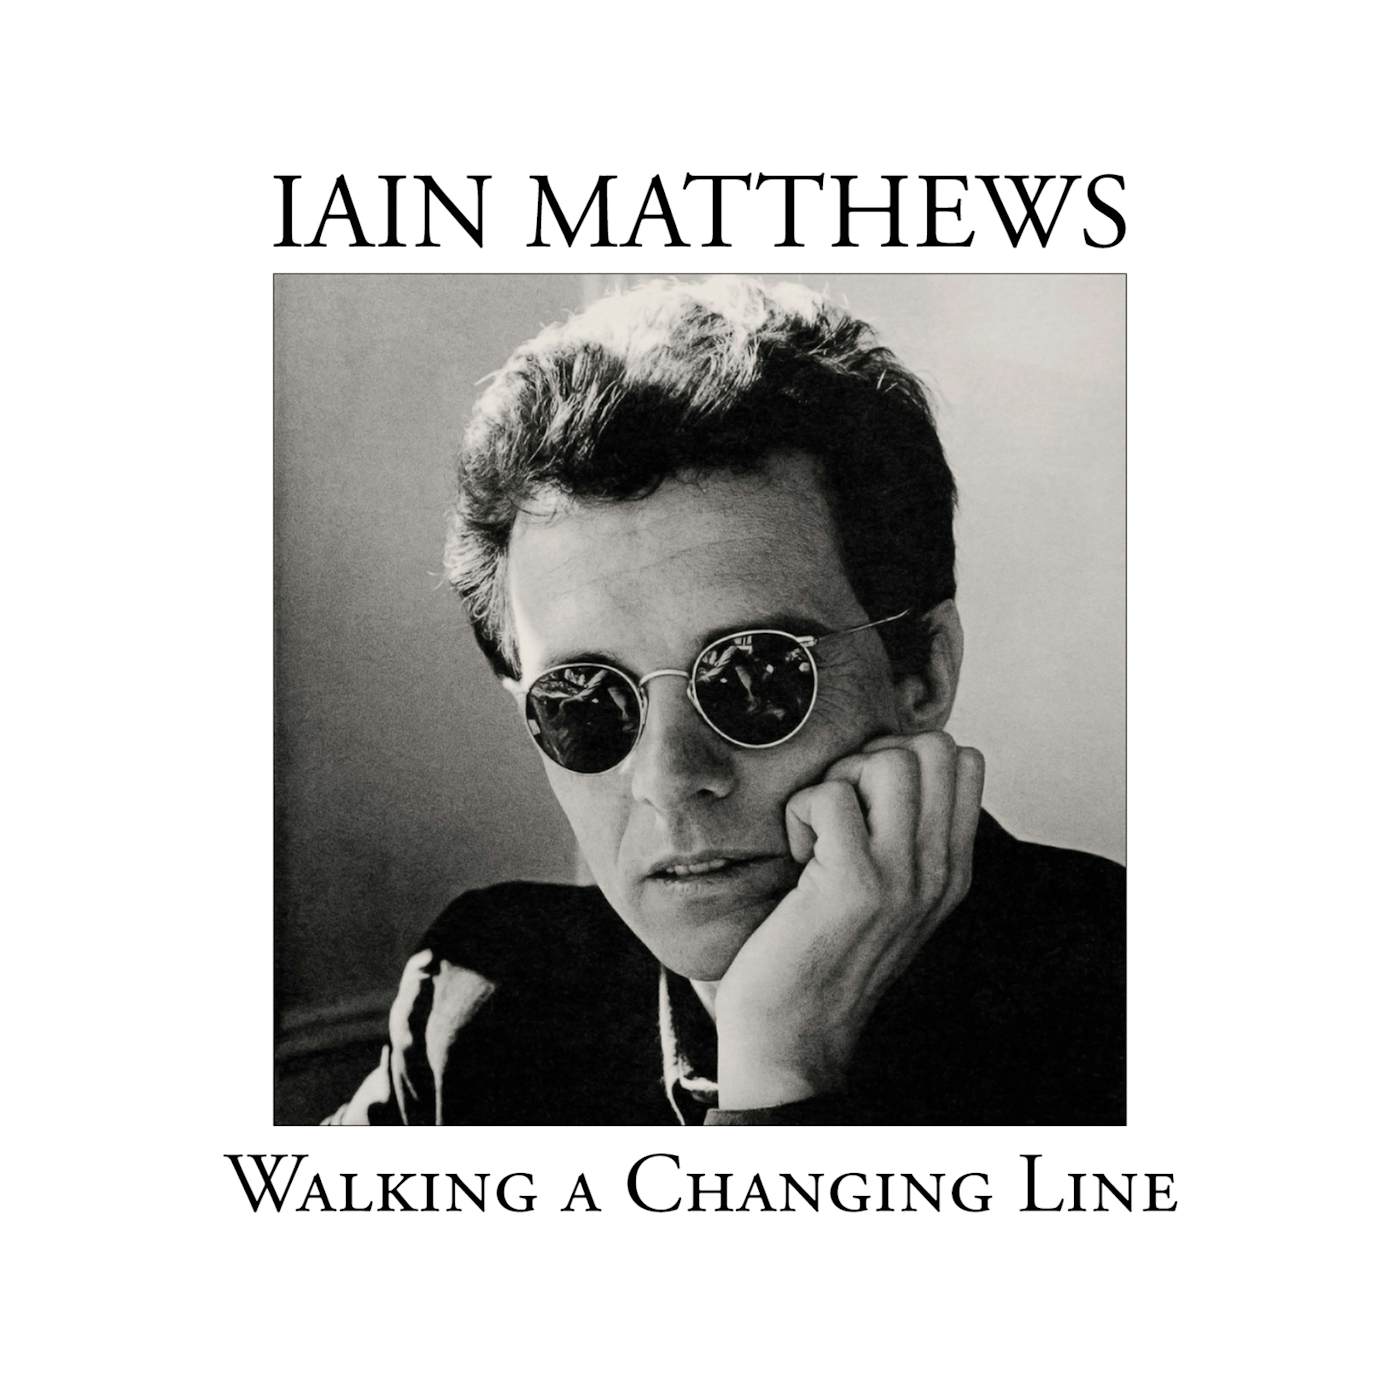 Iain Matthews WALKING A CHANGING LINE CD